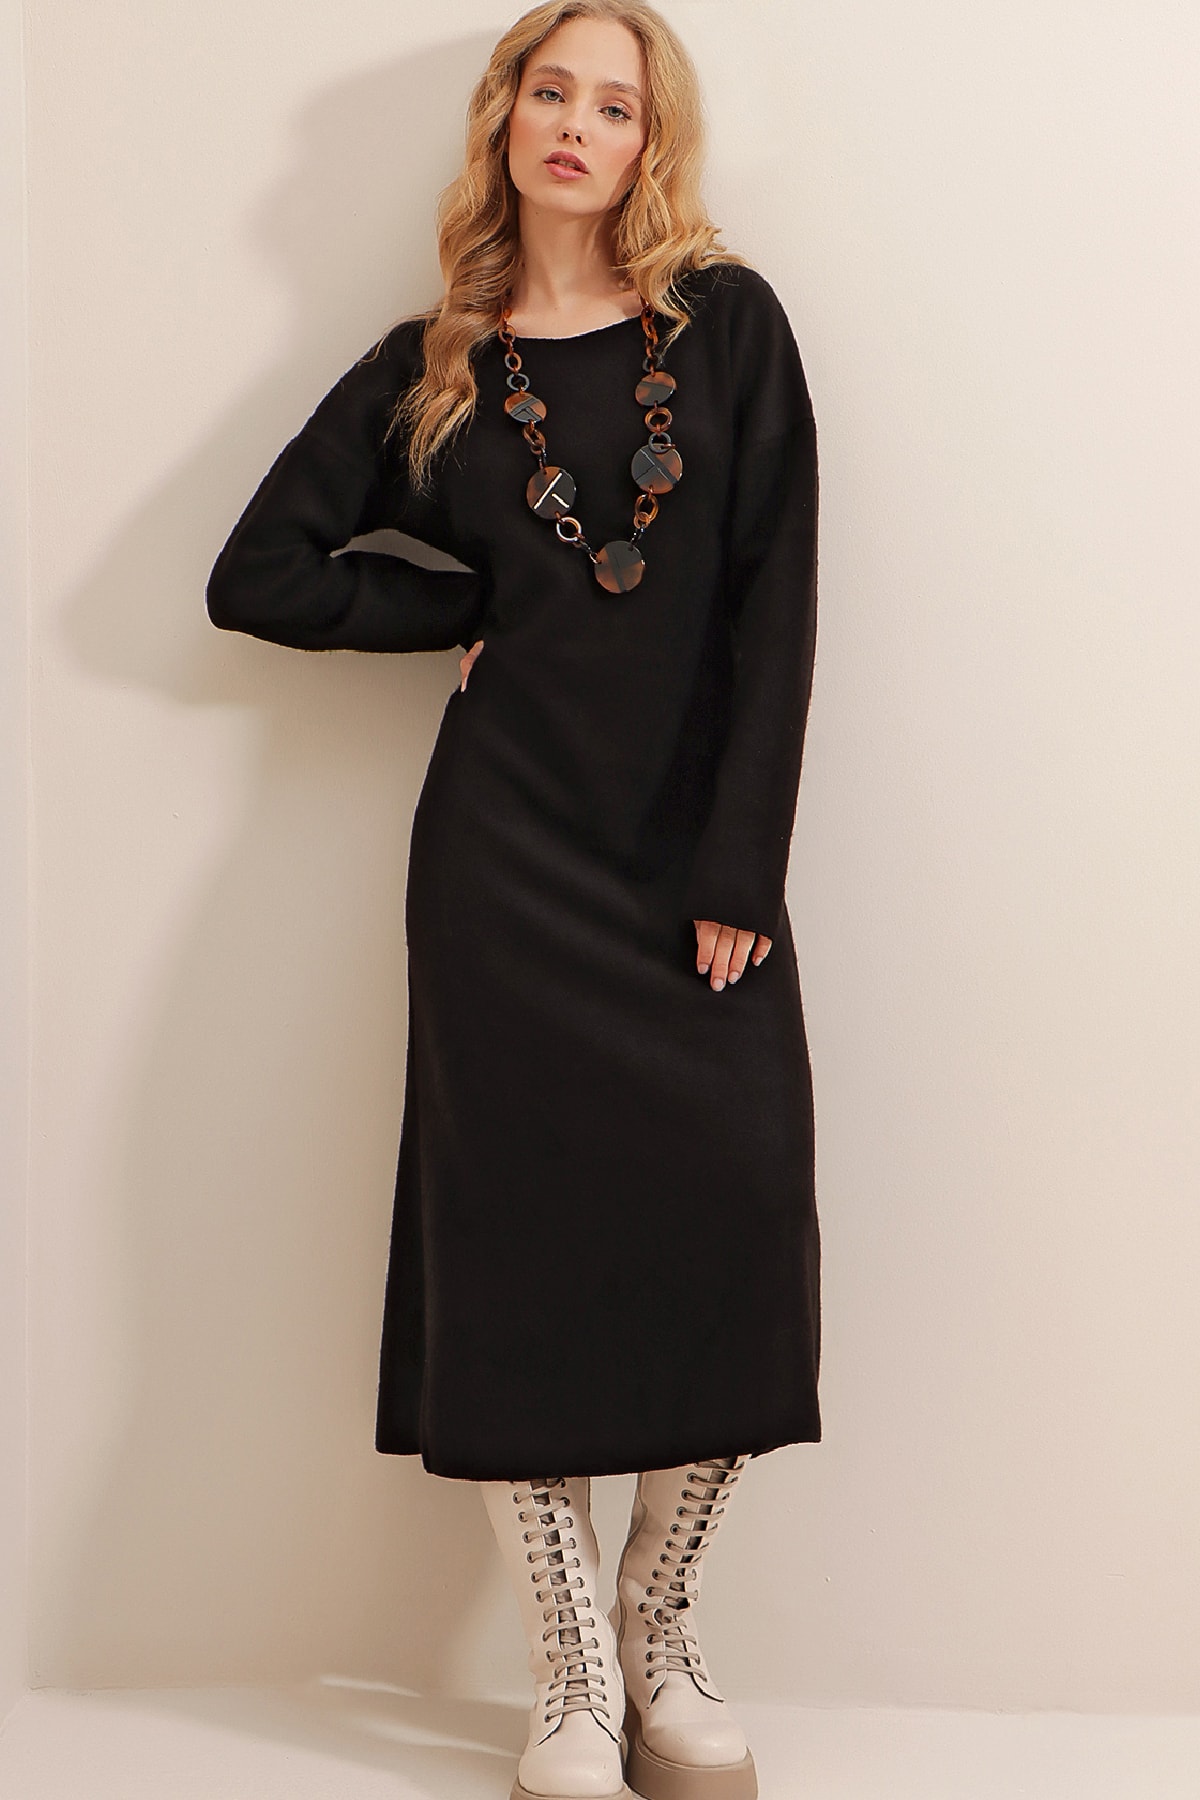 Levně Trend Alaçatı Stili Women's Black Boat Neck Wool Effect Knitwear Dress